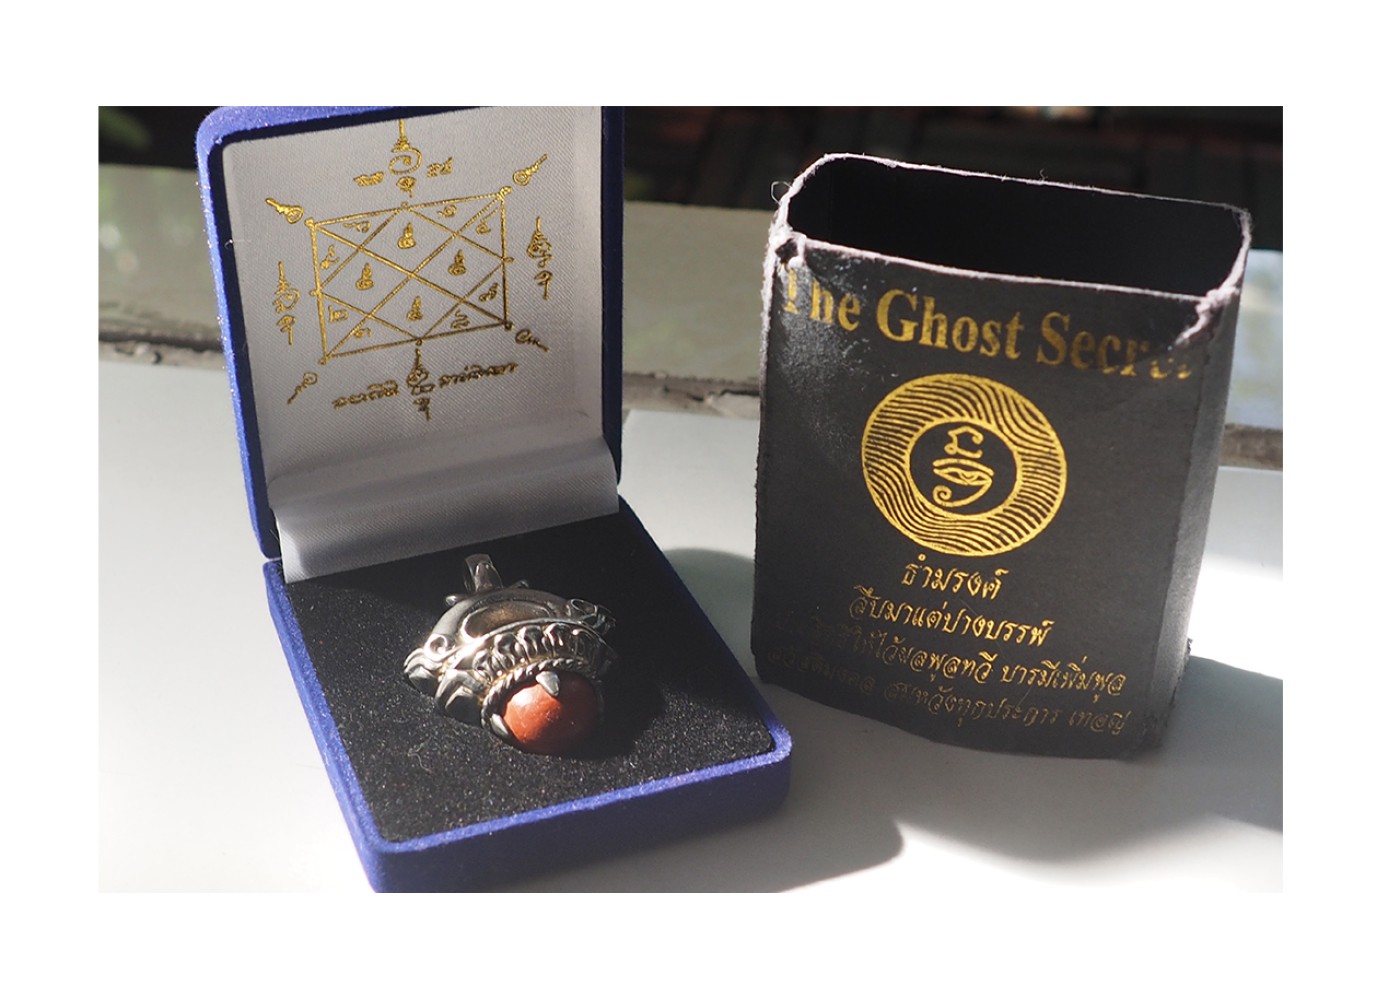 ธำมรงค์ อ.โอเล่ The Ghost Secret   สีชุบเงิน  มีเพียงองค์เดียว ราคา 12,900 บาท